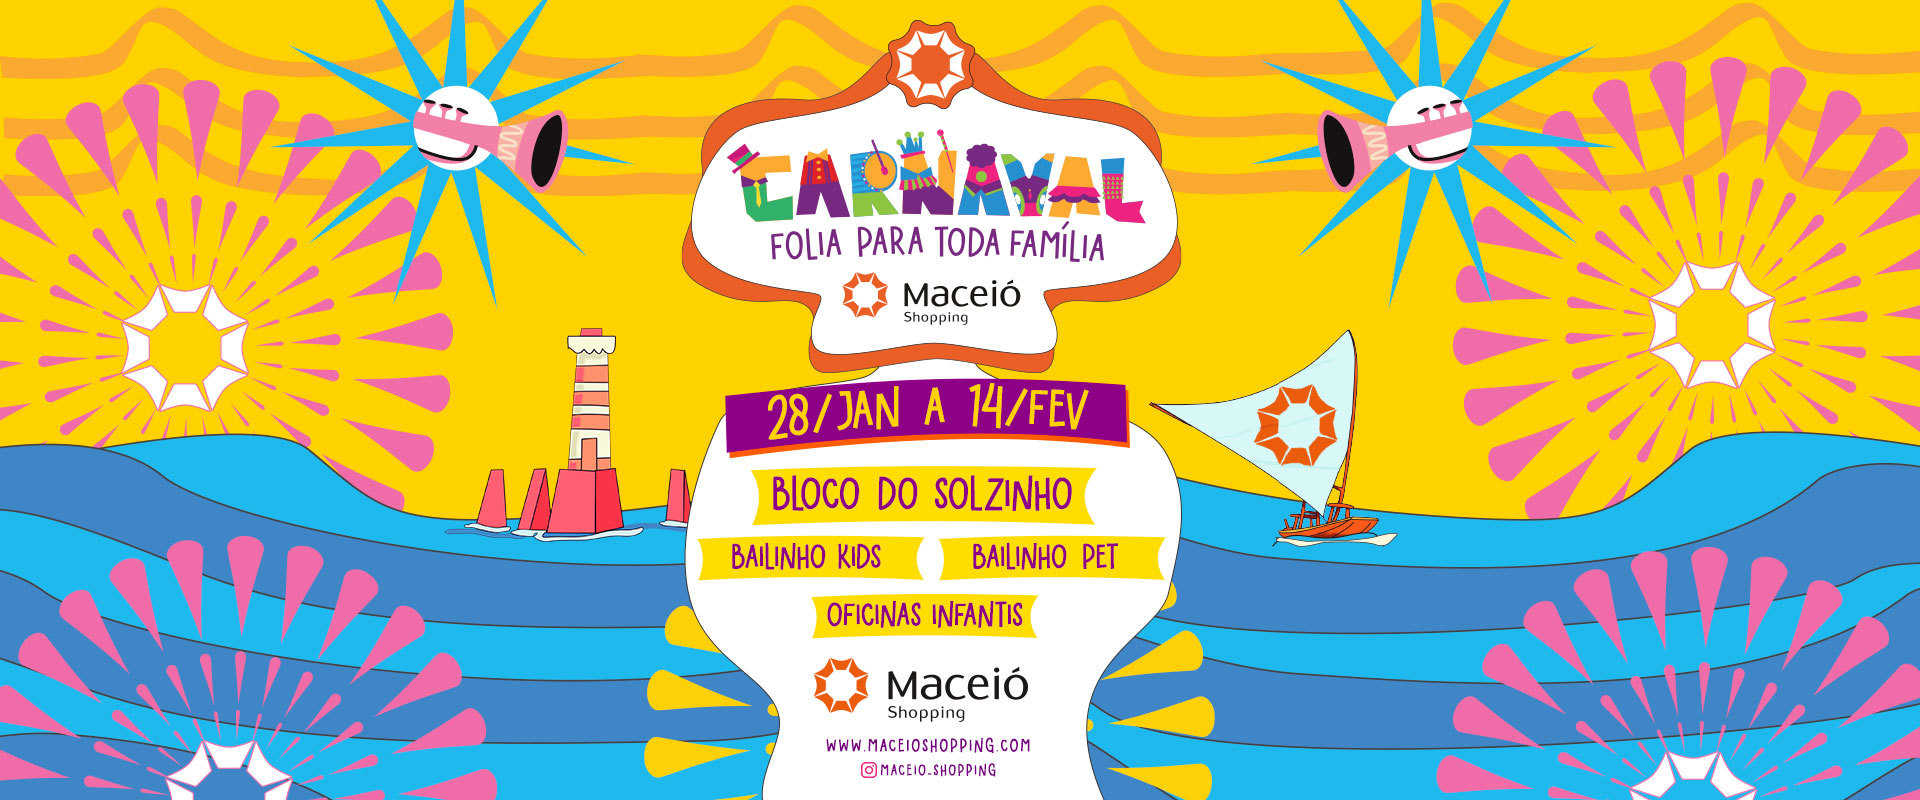 Folia de carnaval começa neste domingo no Maceió Shopping